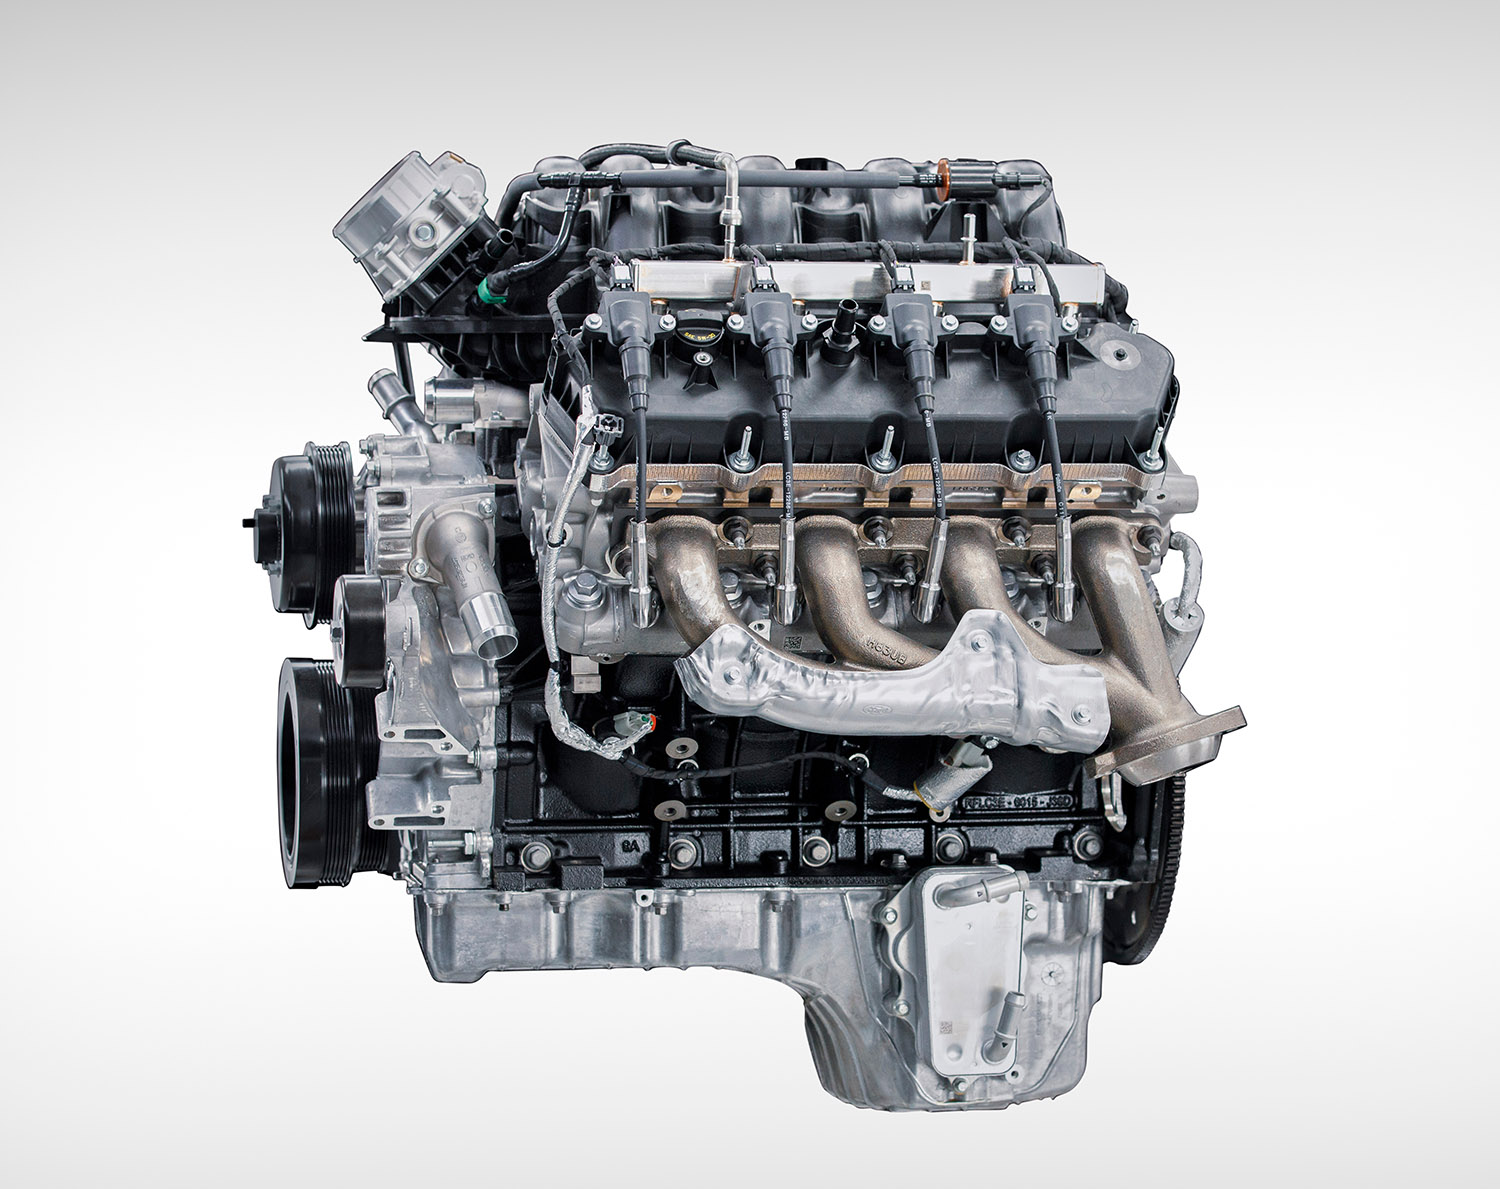 New 6.8-liter V8